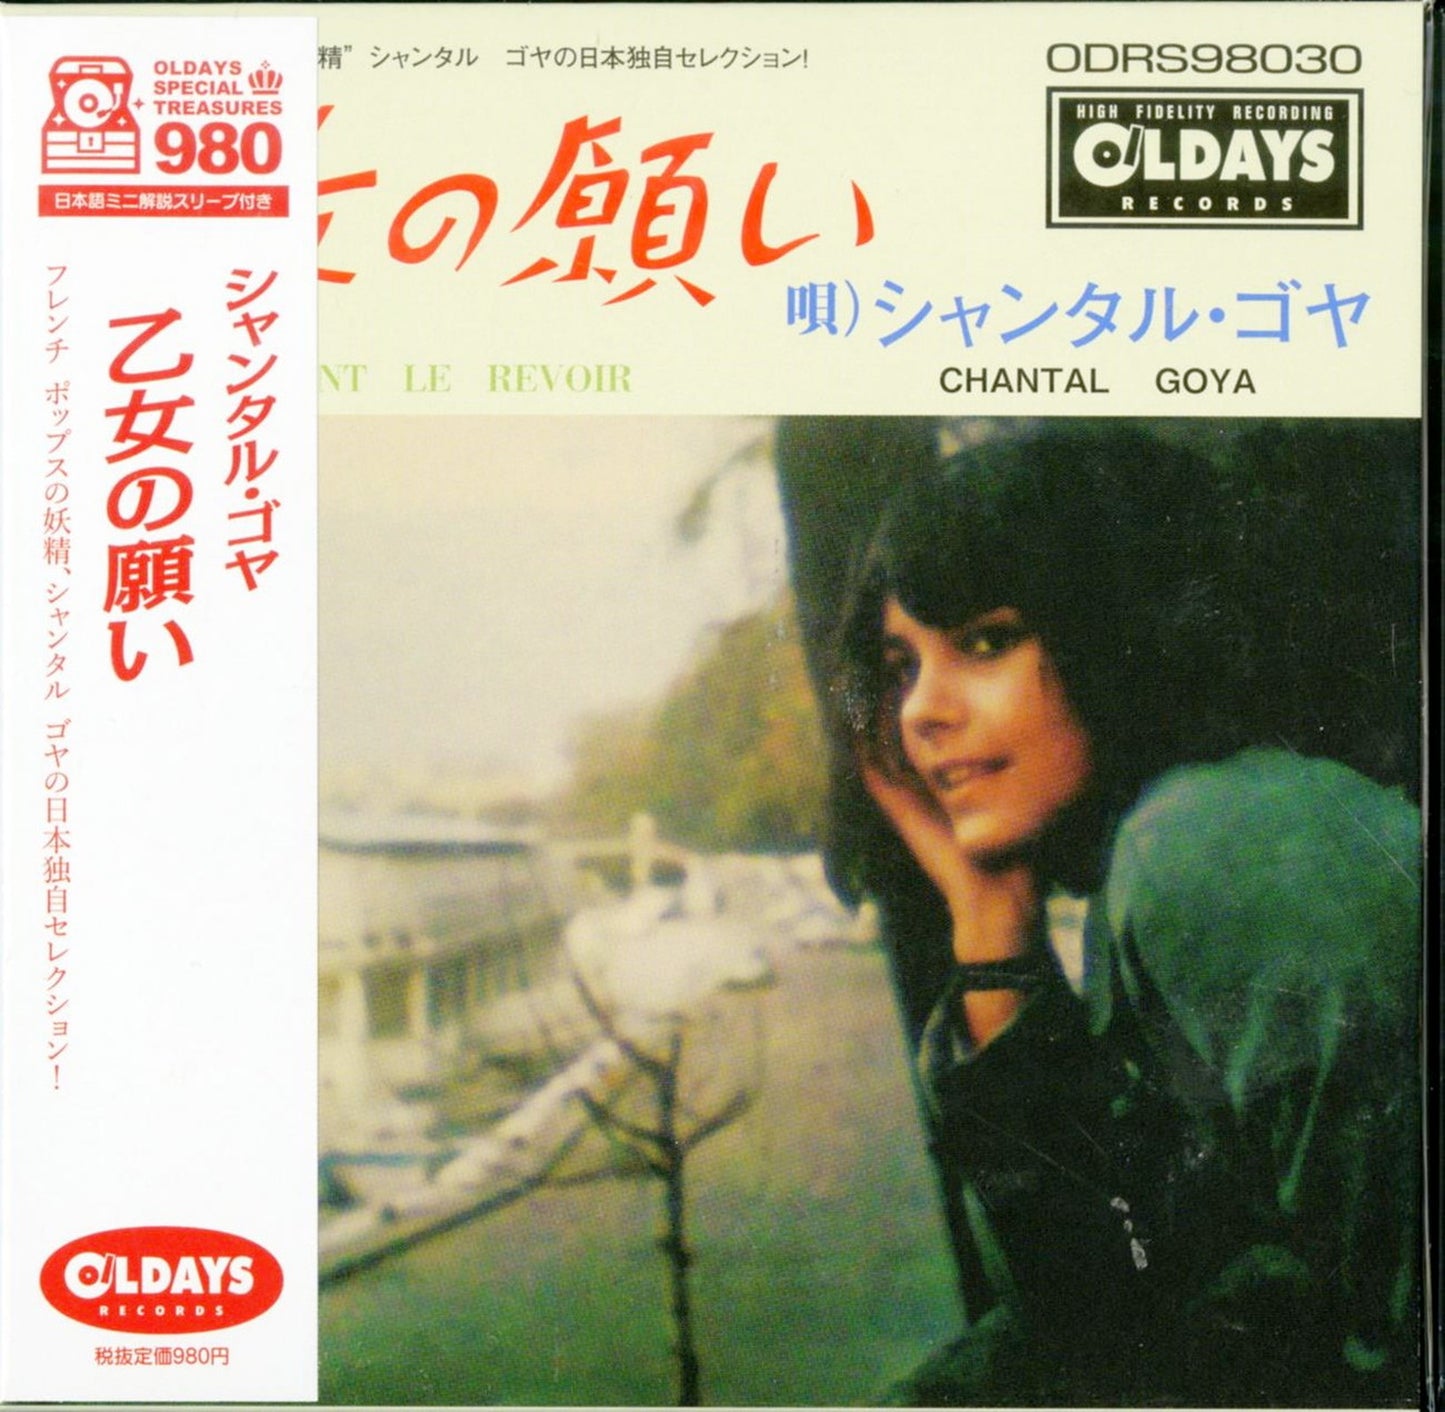 Chantal Goya - Comment Le Revoir - Japan  Mini LP CD